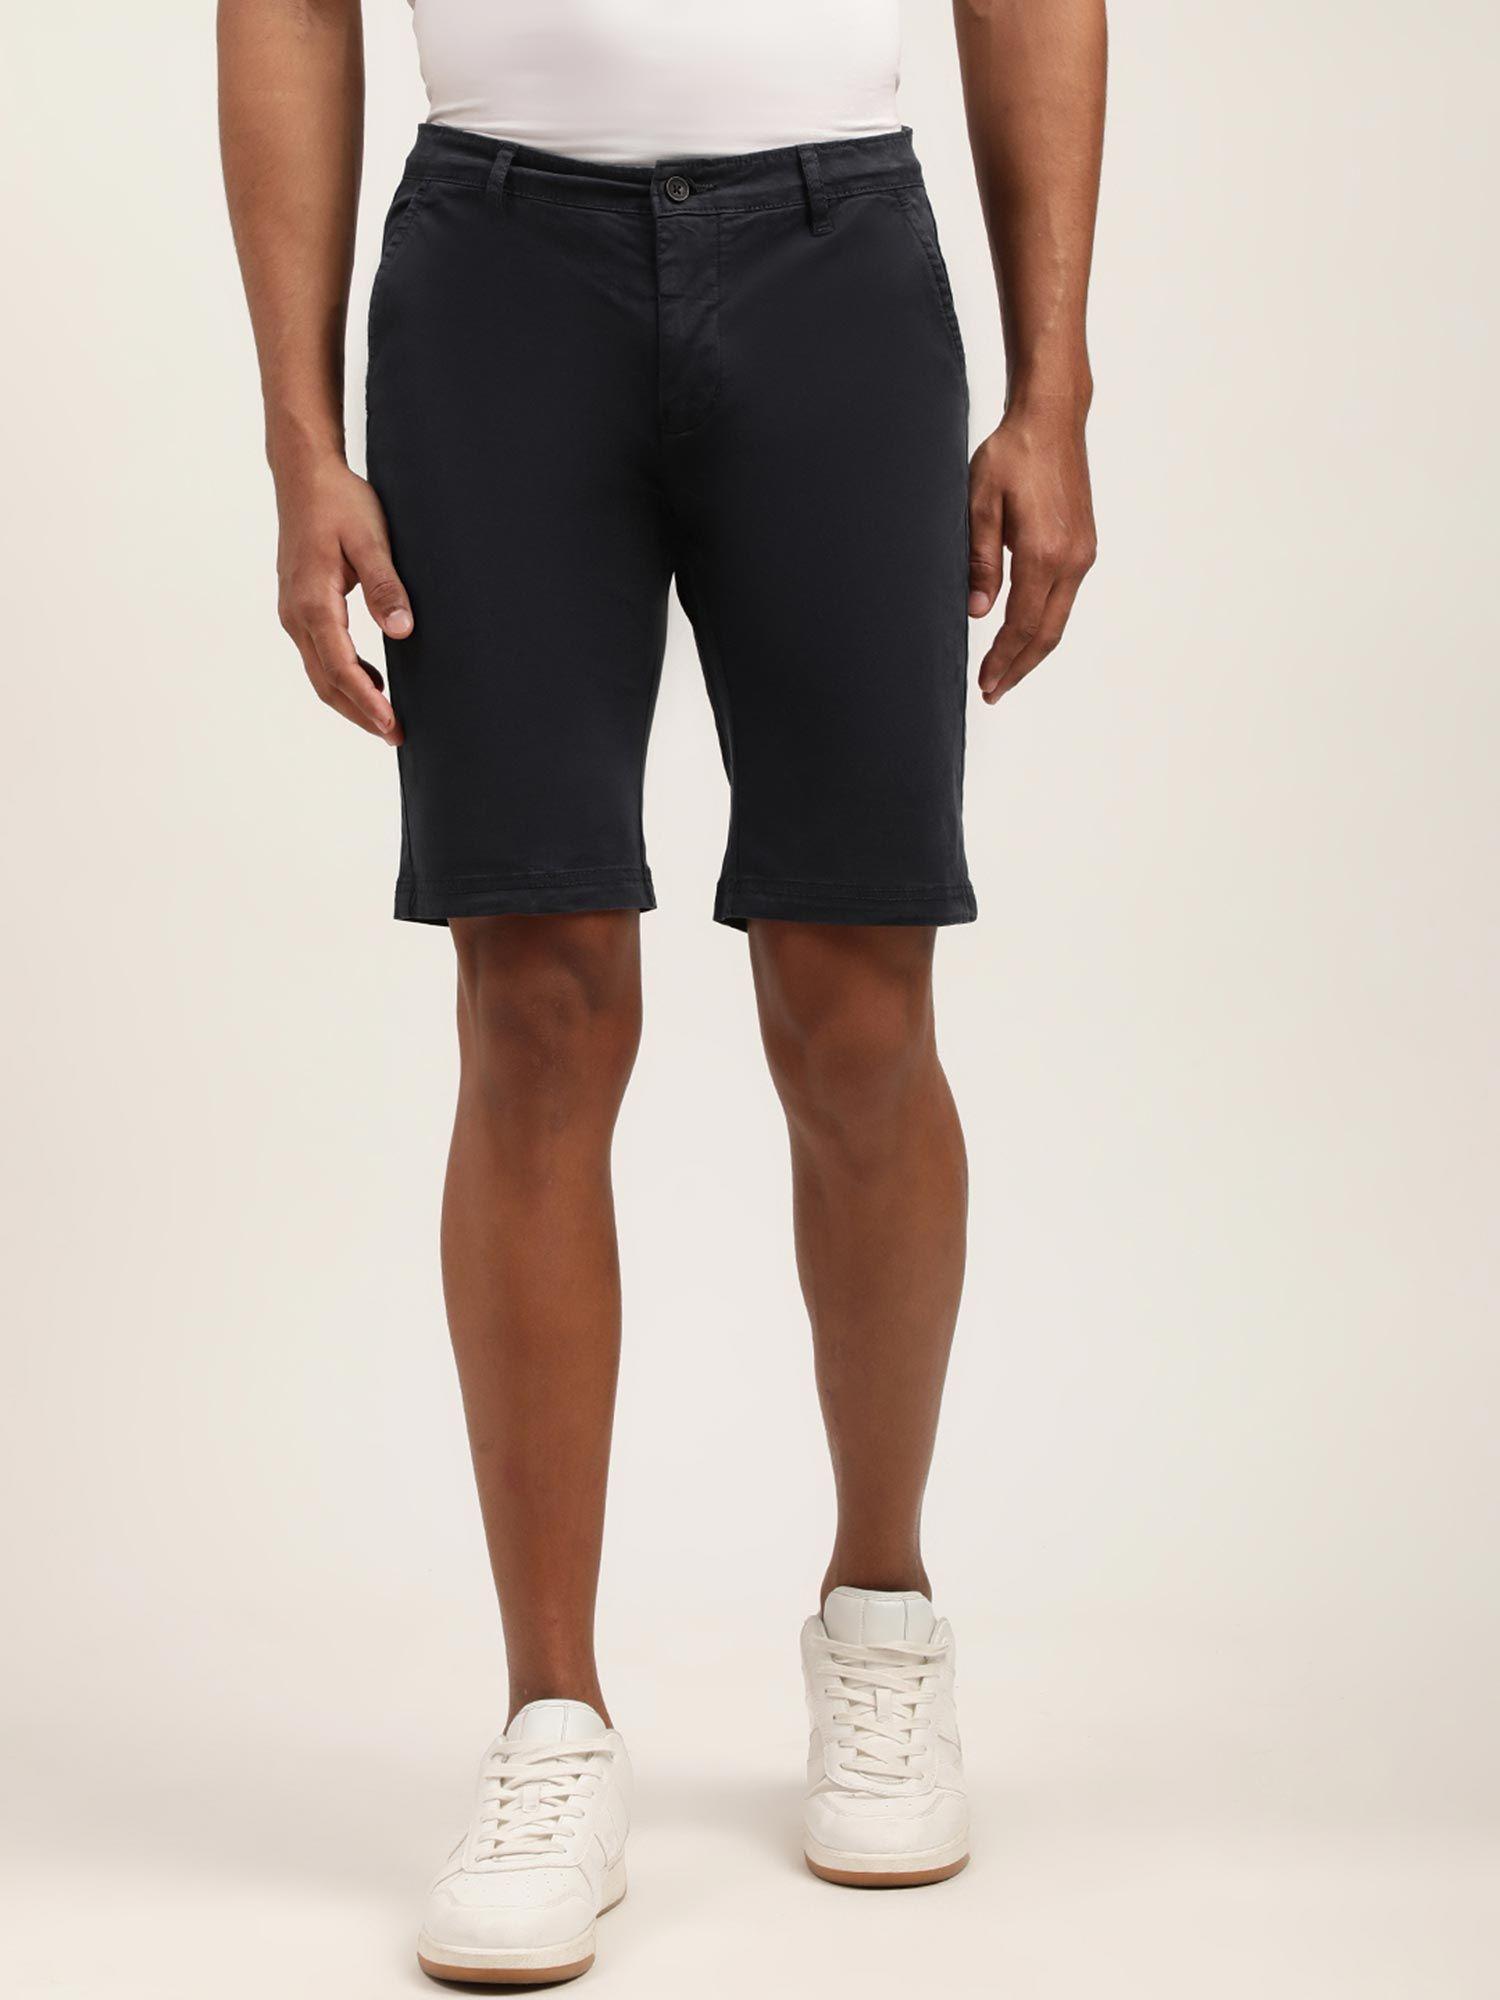 mens-solid-black-regular-shorts